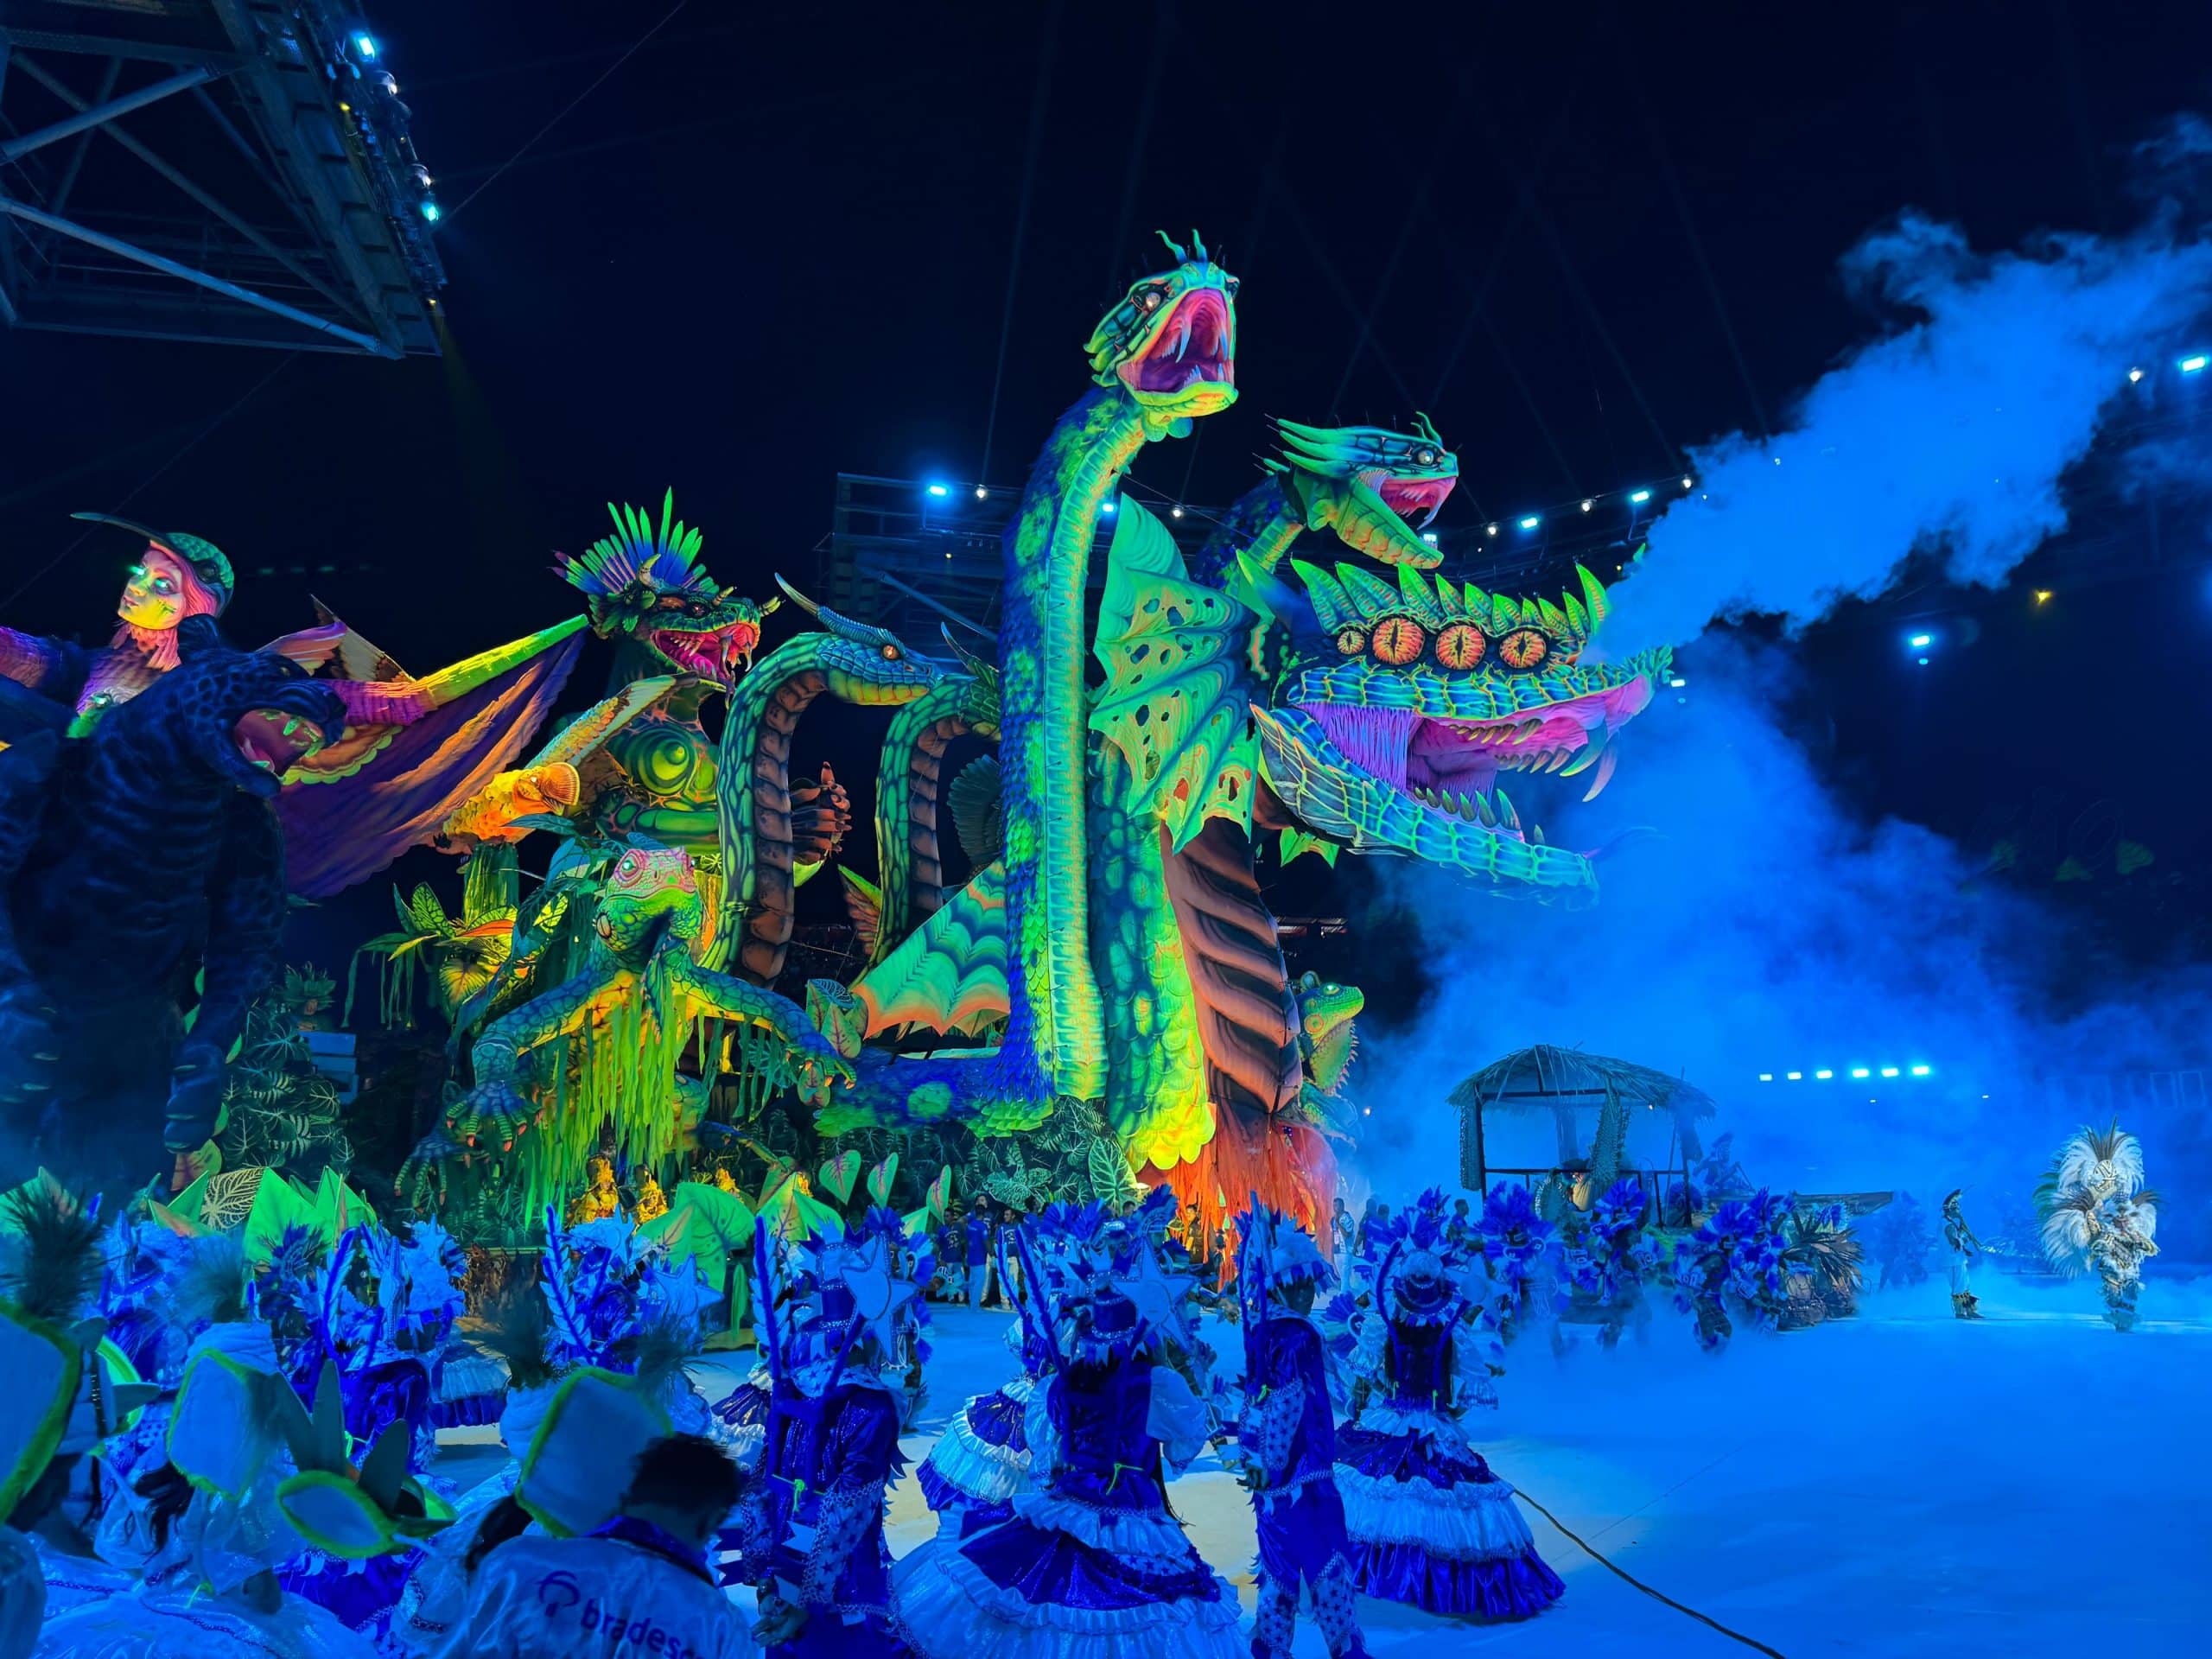 Colorido e inovador, Caprichoso abre festival com espetáculo plástico irretocável